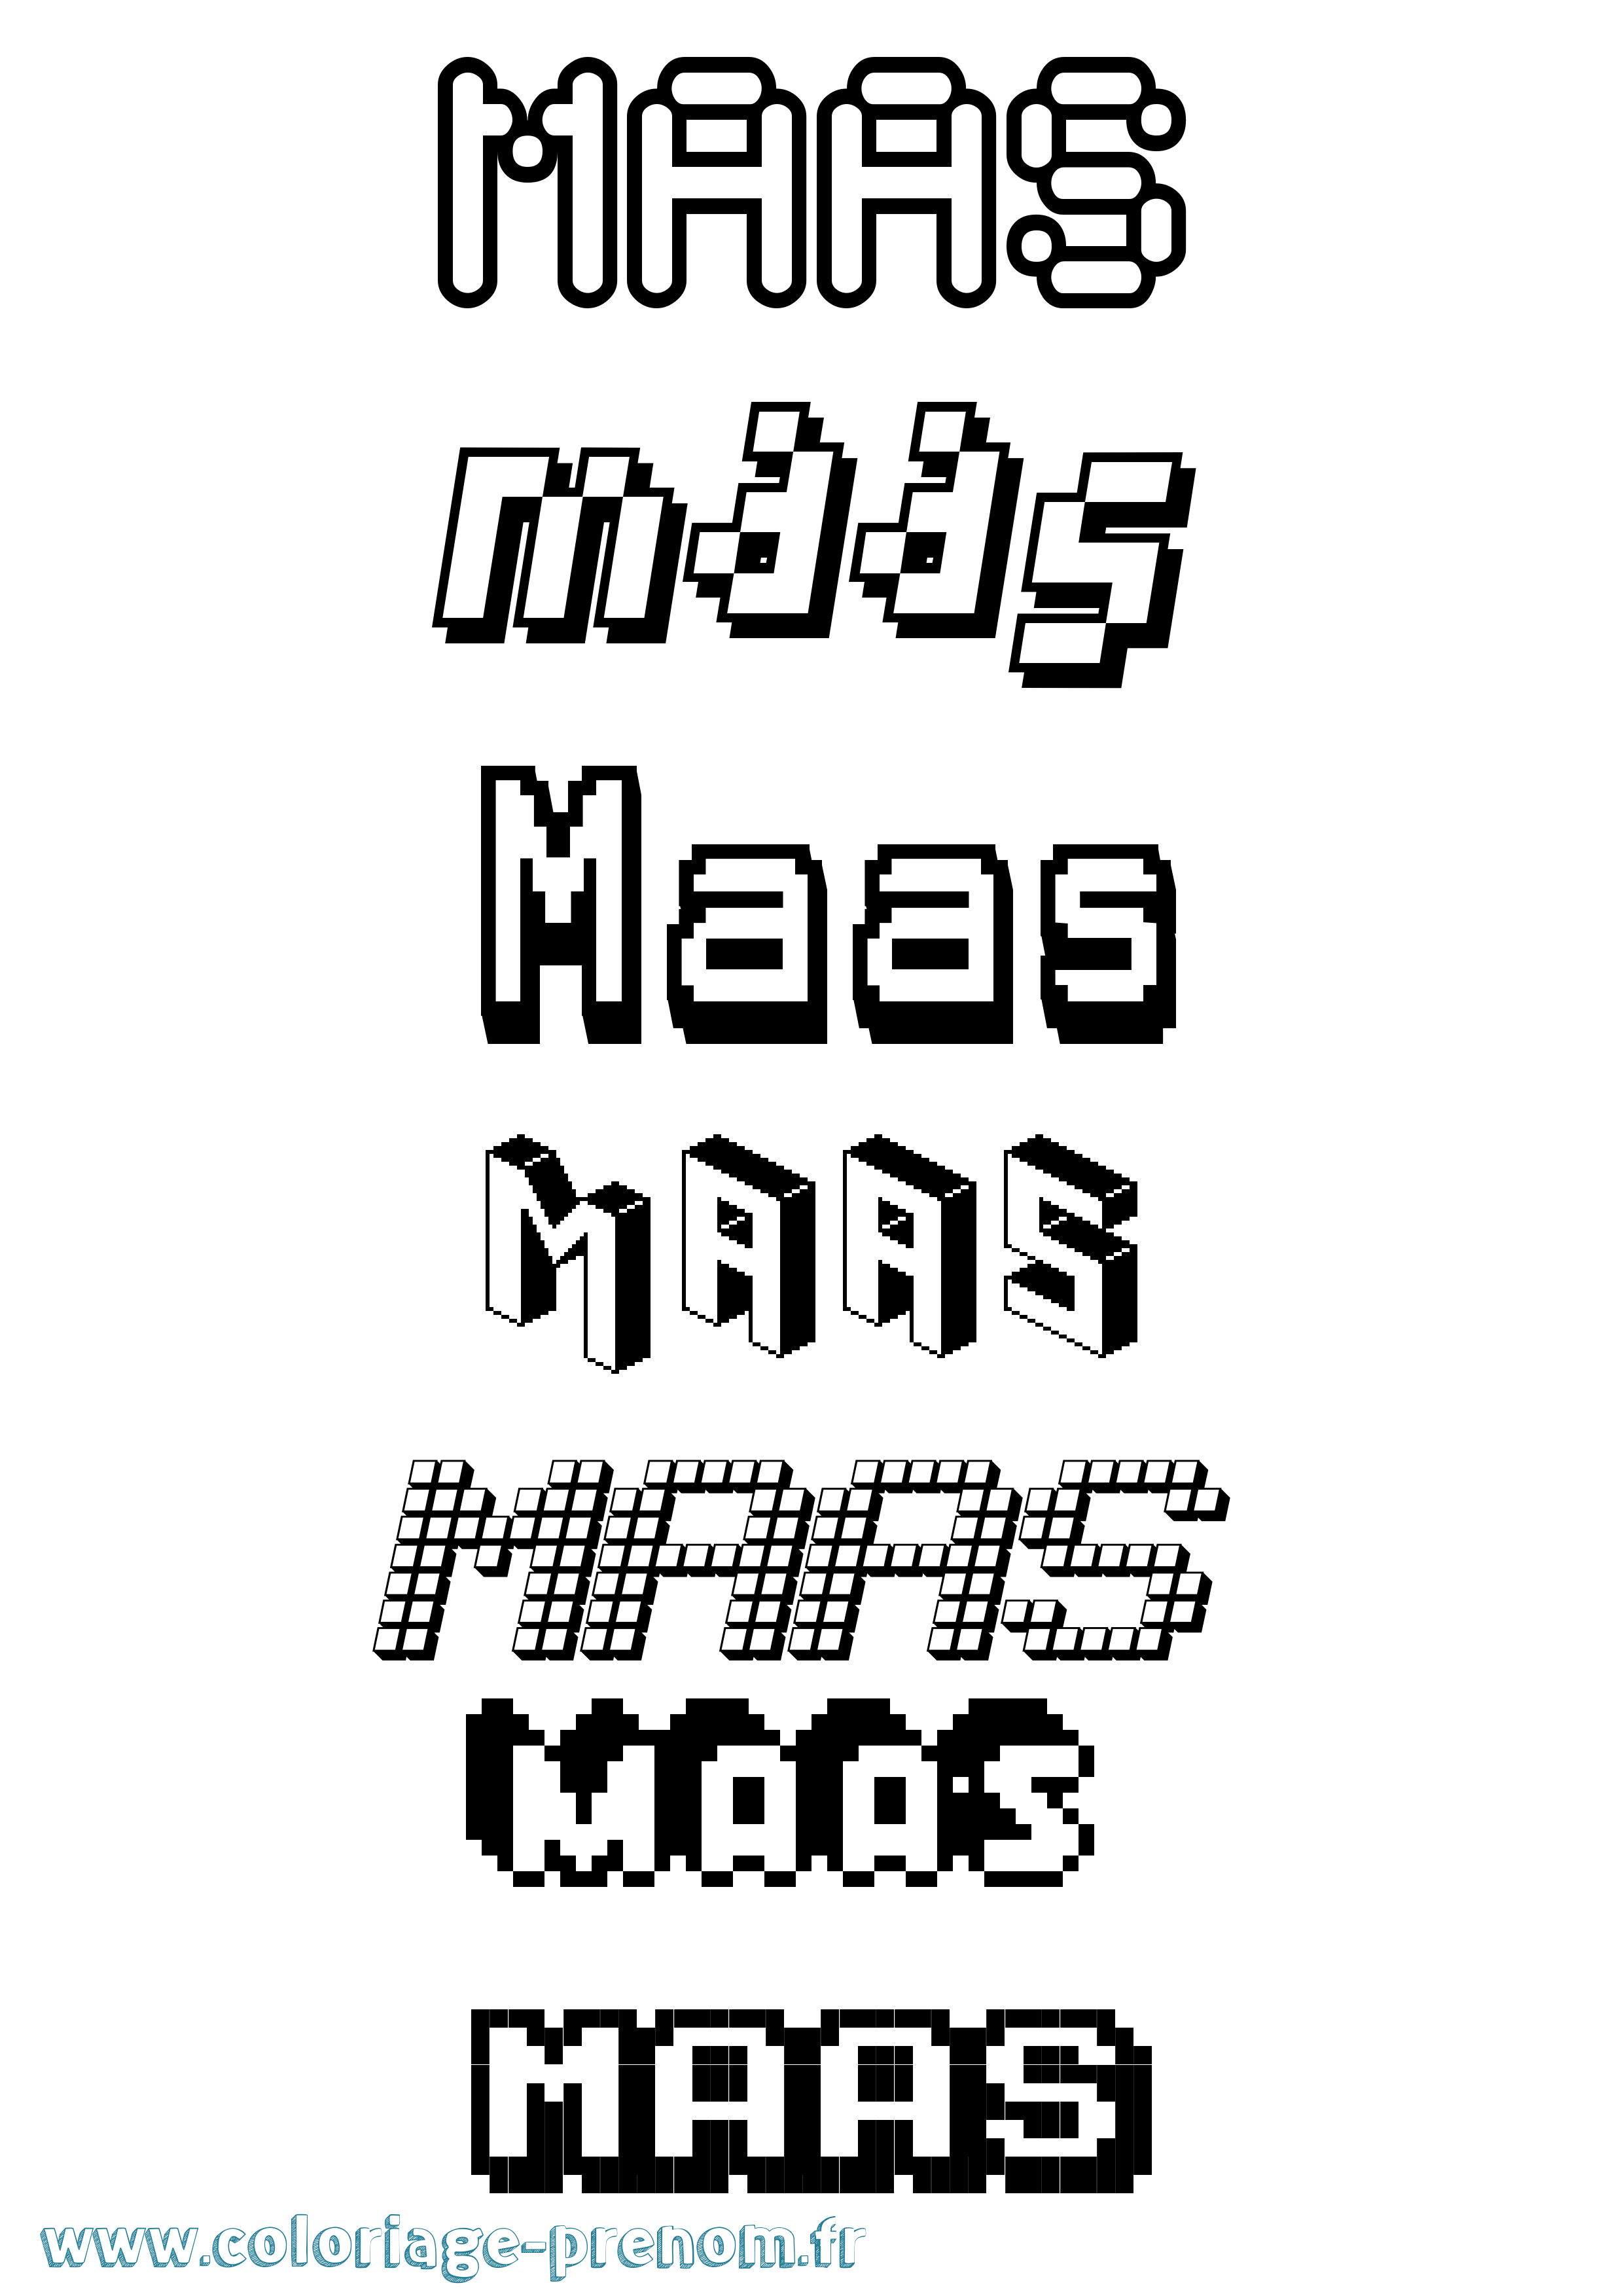 Coloriage prénom Maas Pixel